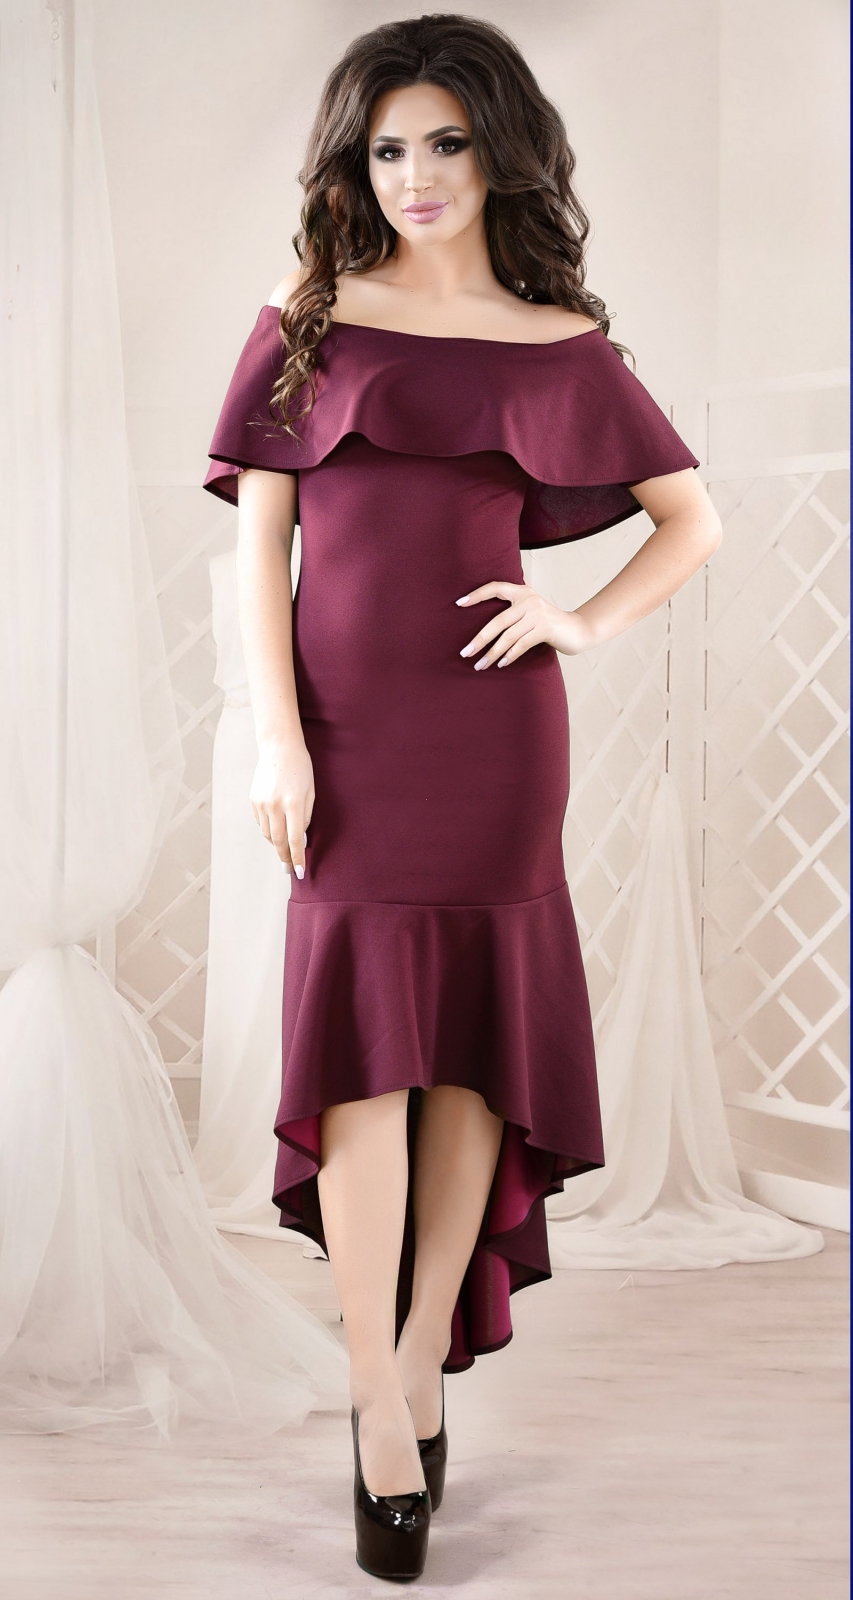 Каталог платьев - Коктейльное платье цвета марсала с пышной юбкой и кружевным верхом